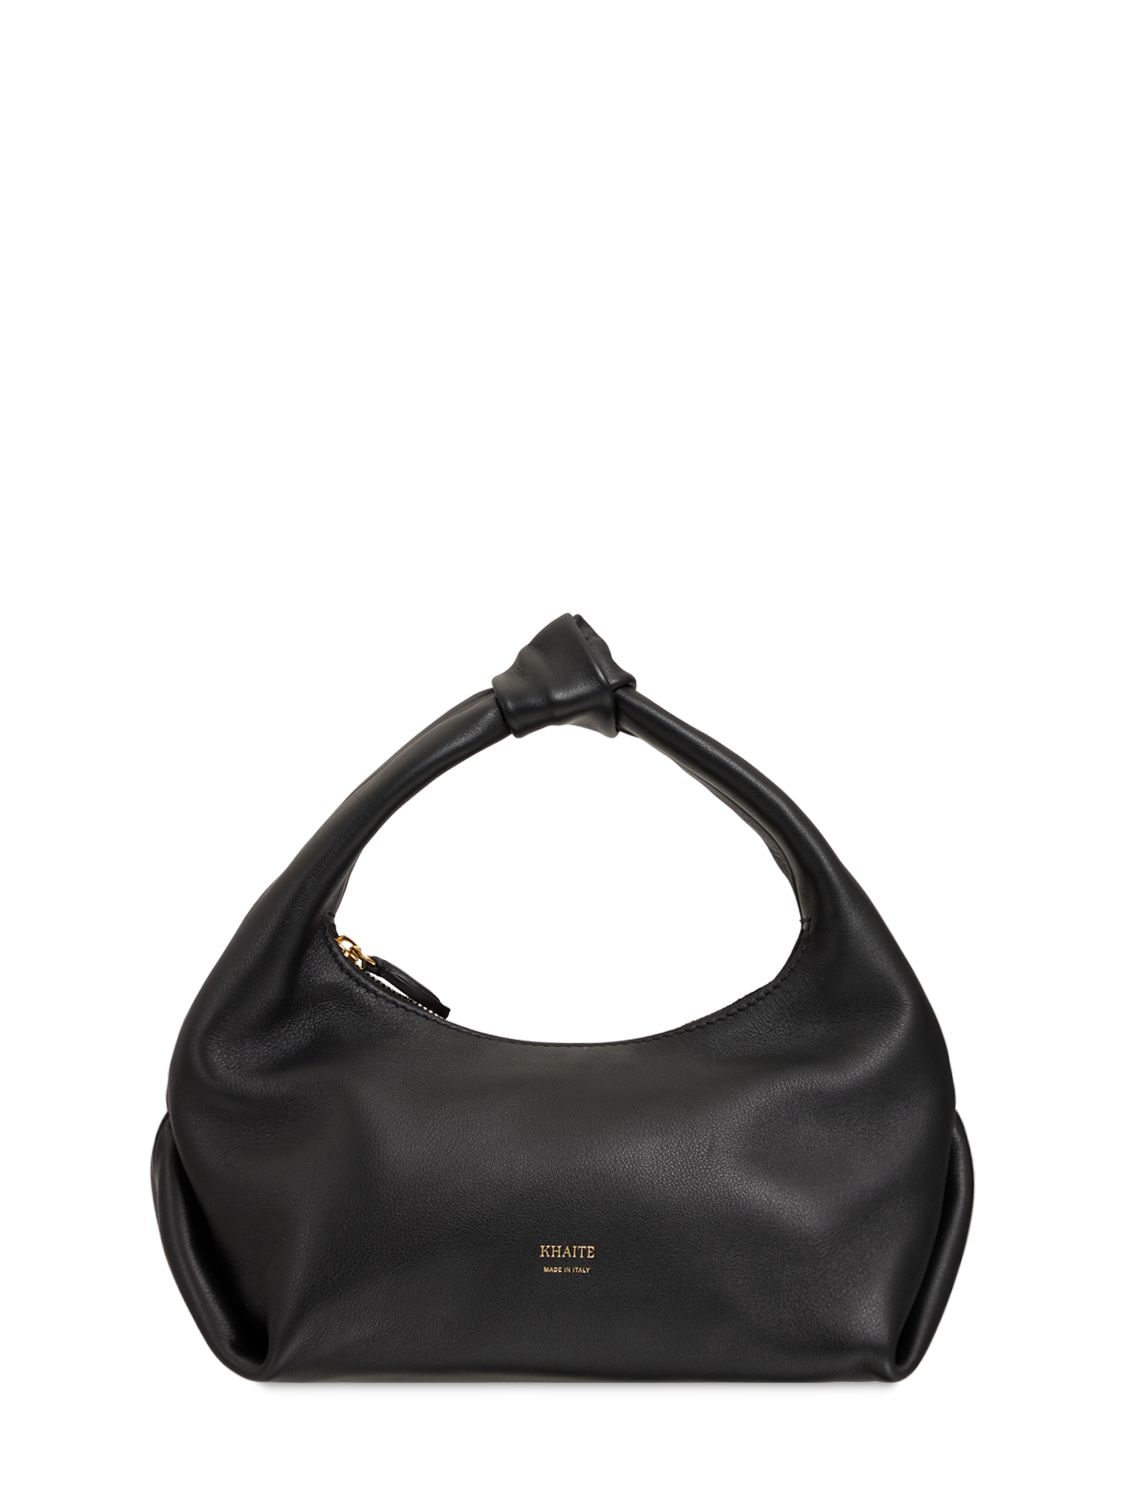 Khaite - Small beatrice smooth leather hobo bag - Black | Luisaviaroma